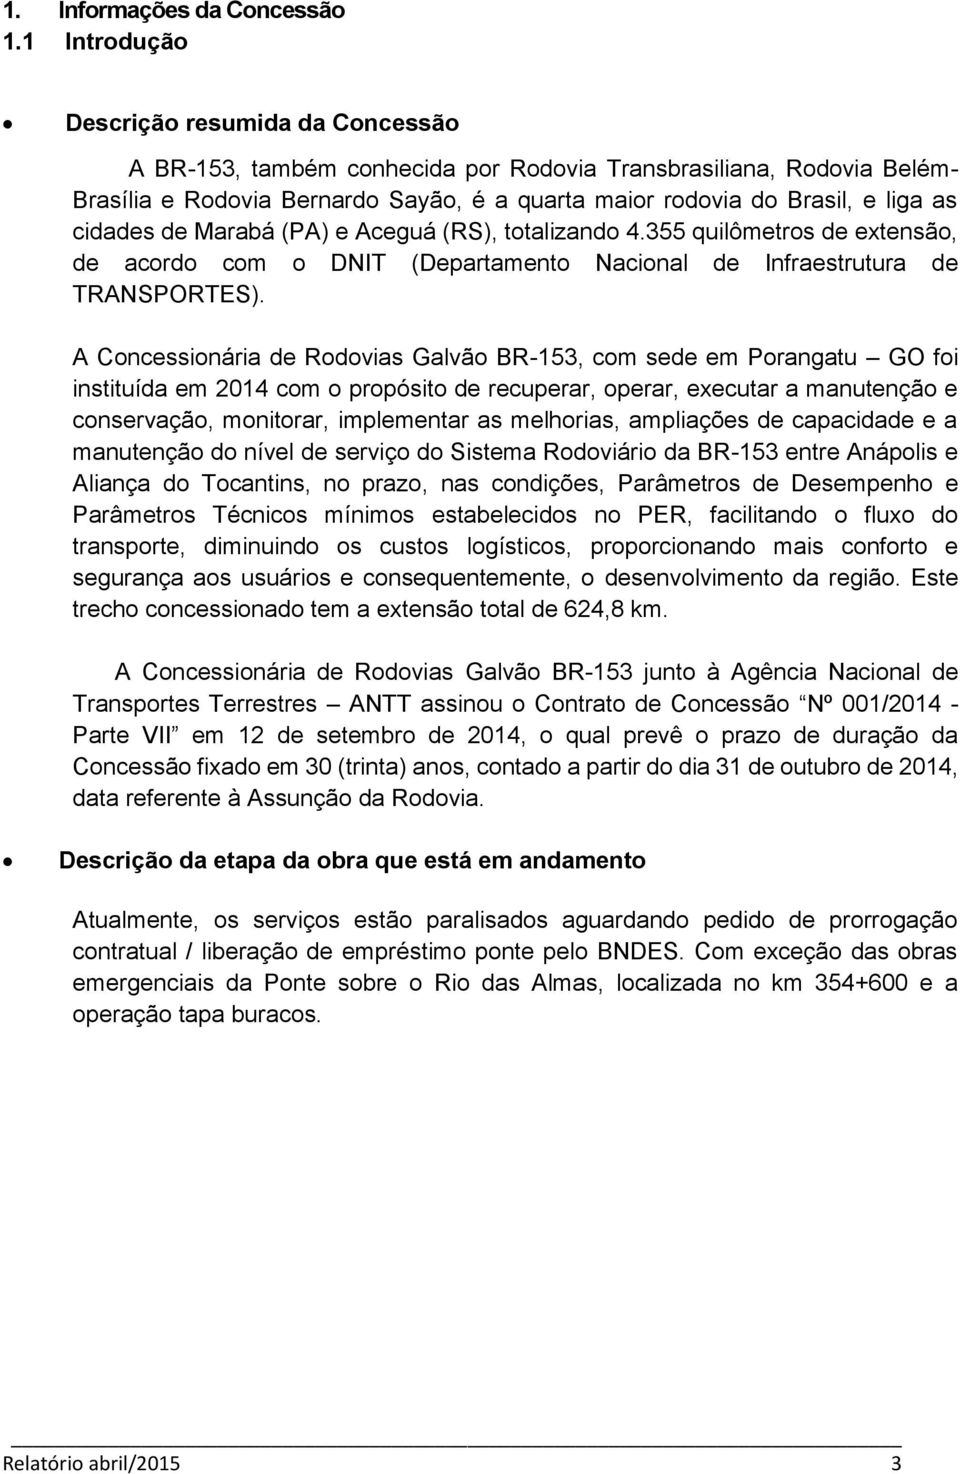 cidades de Marabá (PA) e Aceguá (RS), totalizando 4.355 quilômetros de extensão, de acordo com o DNIT (Departamento Nacional de Infraestrutura de TRANSPORTES).